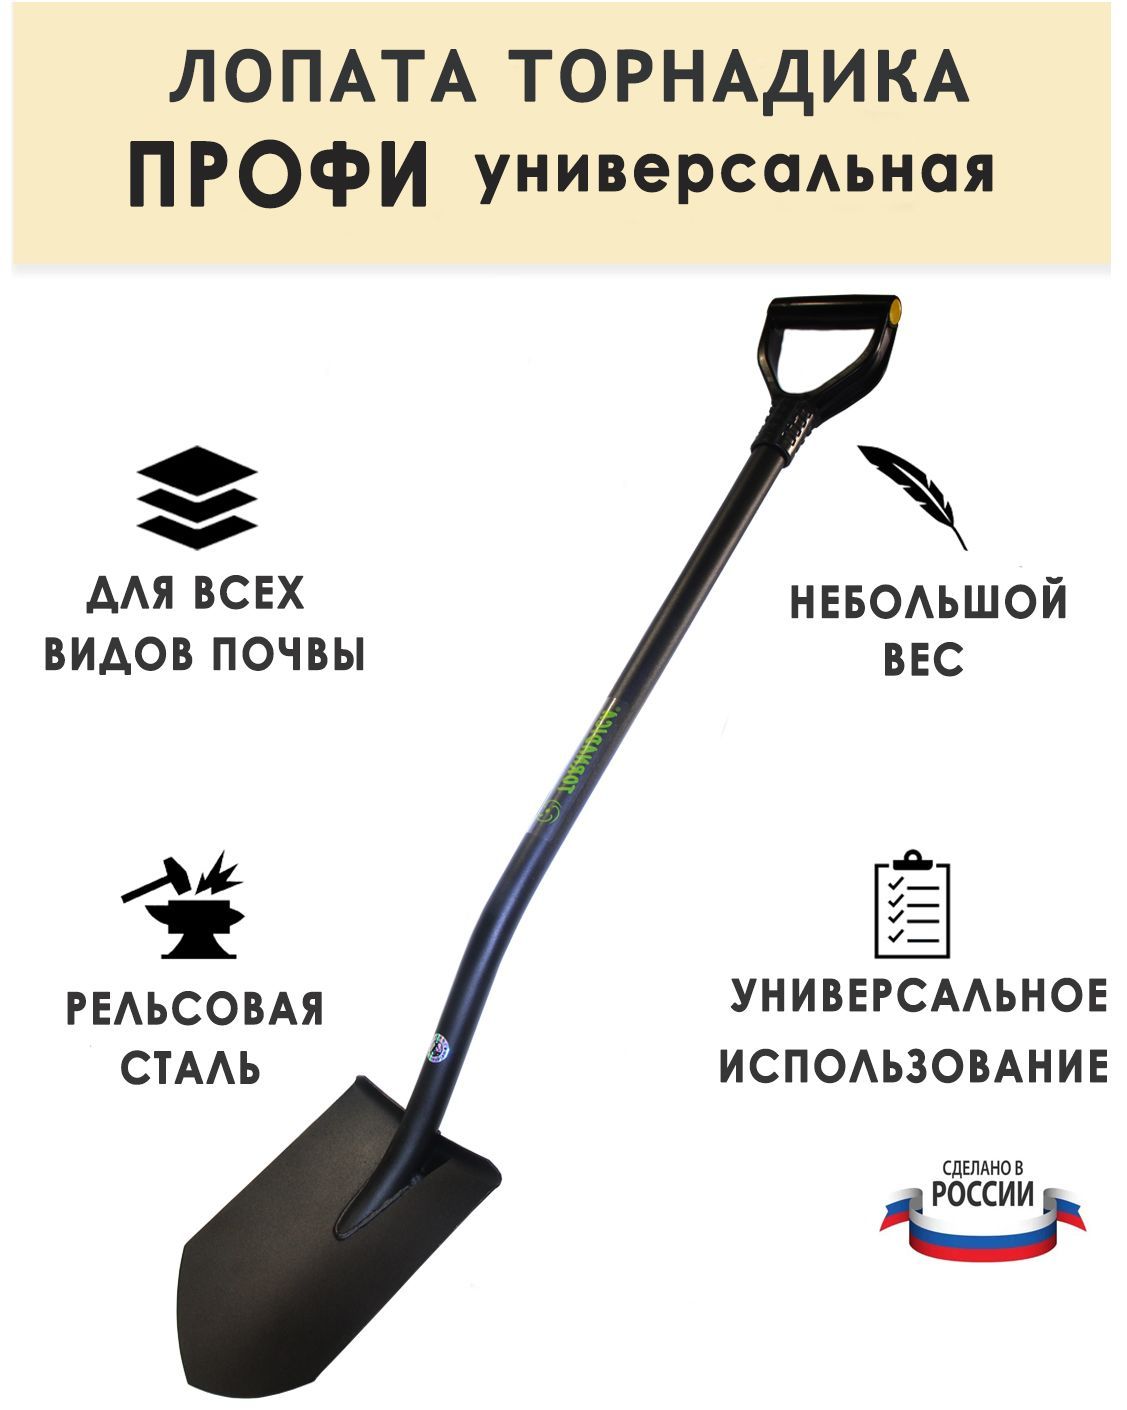 Купить лопату для копки картофеля в интернет магазине Москвы и Санкт-Петербурга